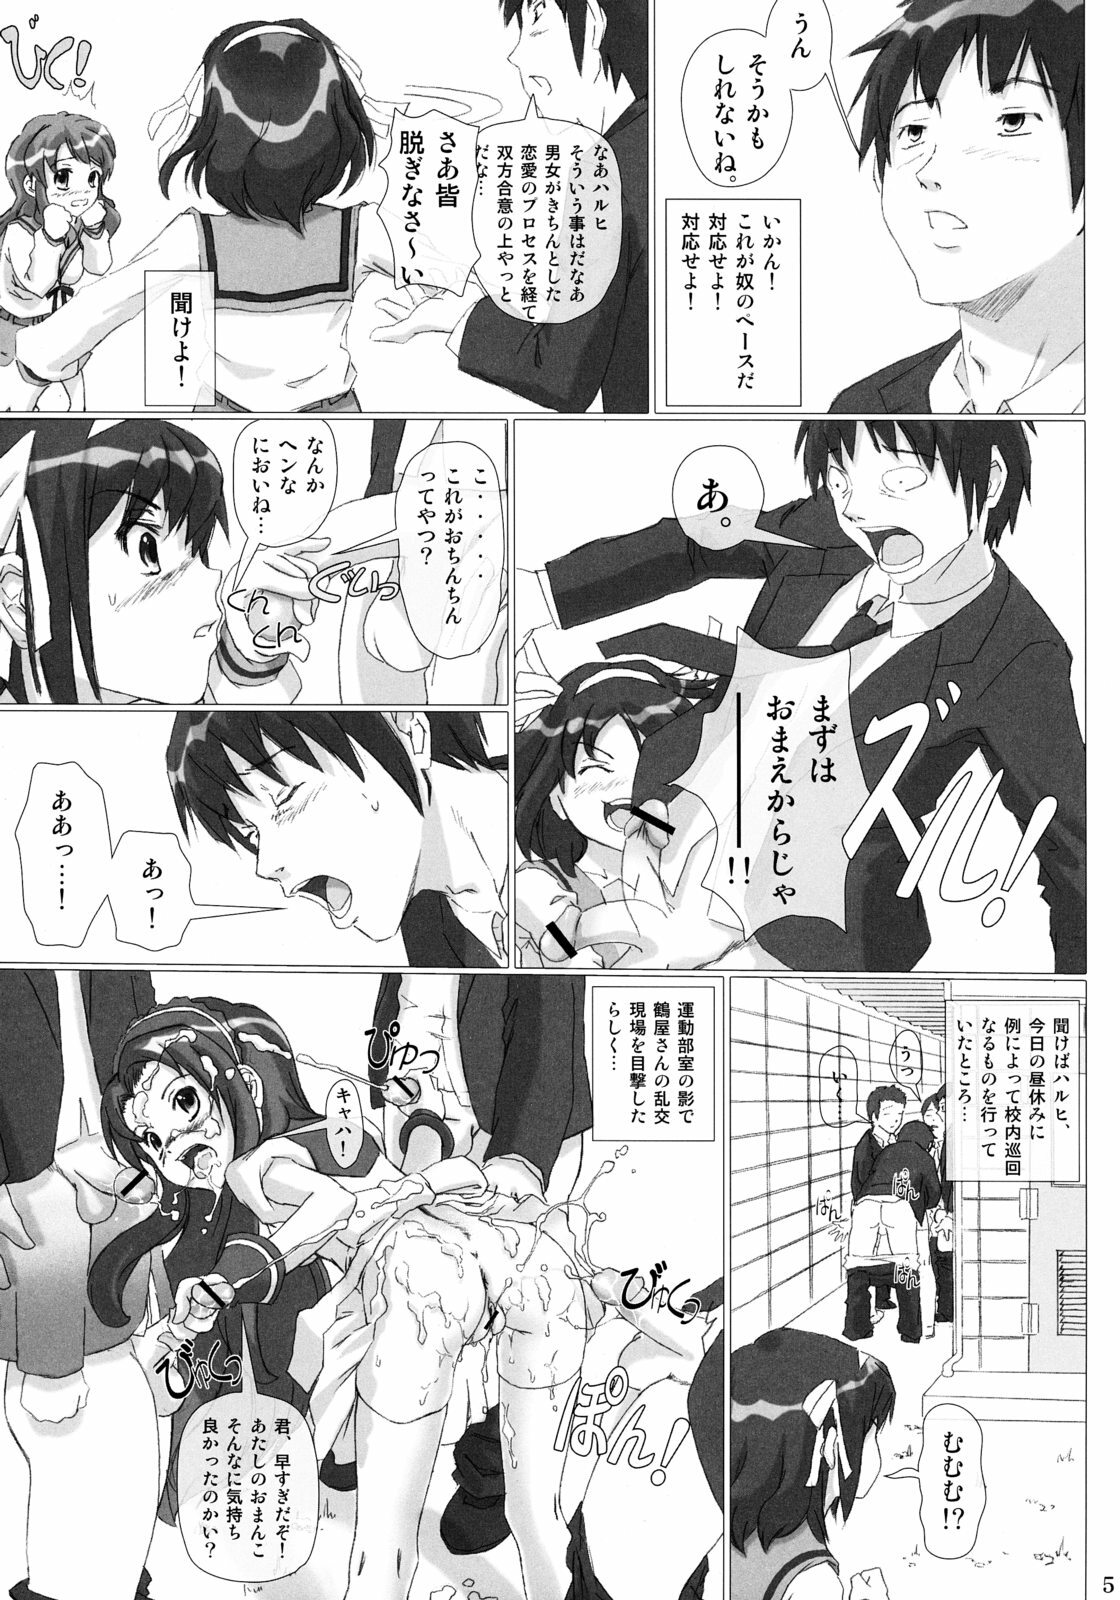 [pooca (Nora Shinji)] Okashi nasai! (The Melancholy of Haruhi Suzumiya) page 4 full